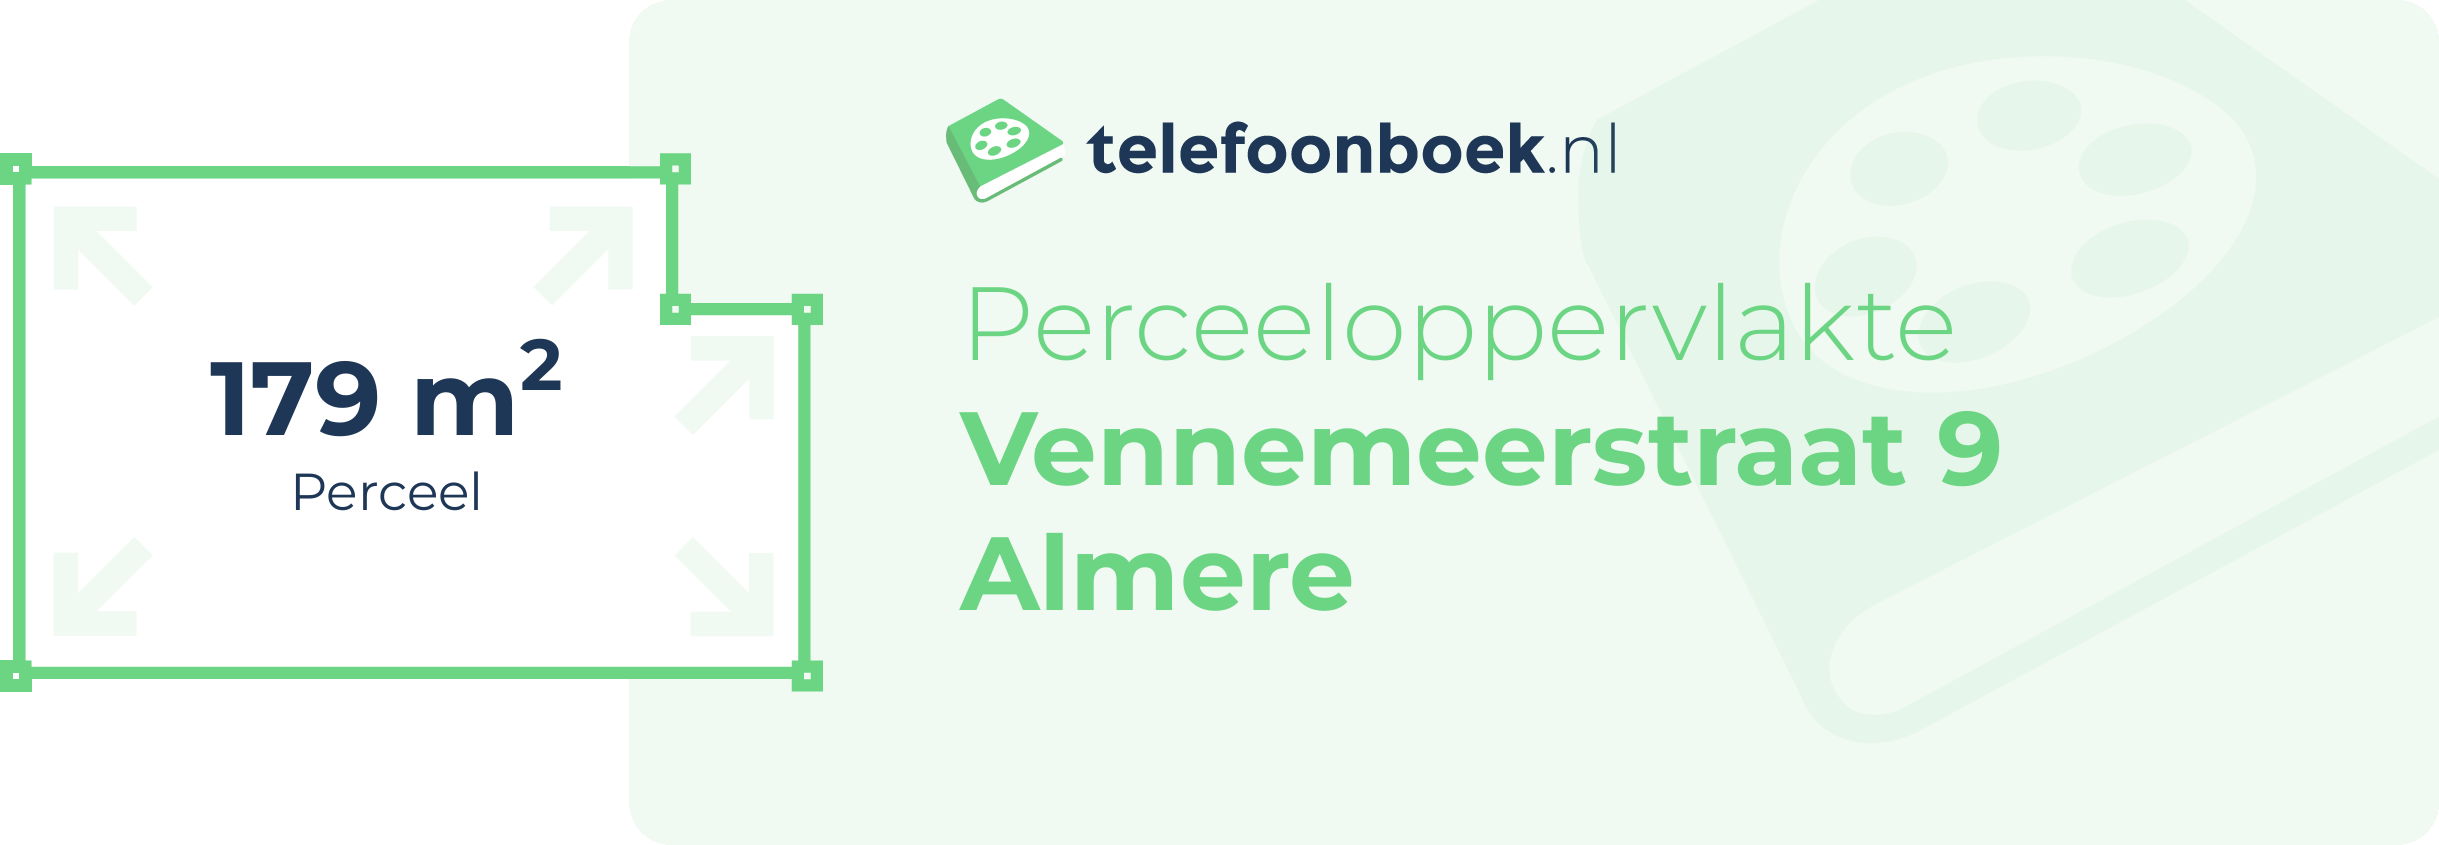 Perceeloppervlakte Vennemeerstraat 9 Almere